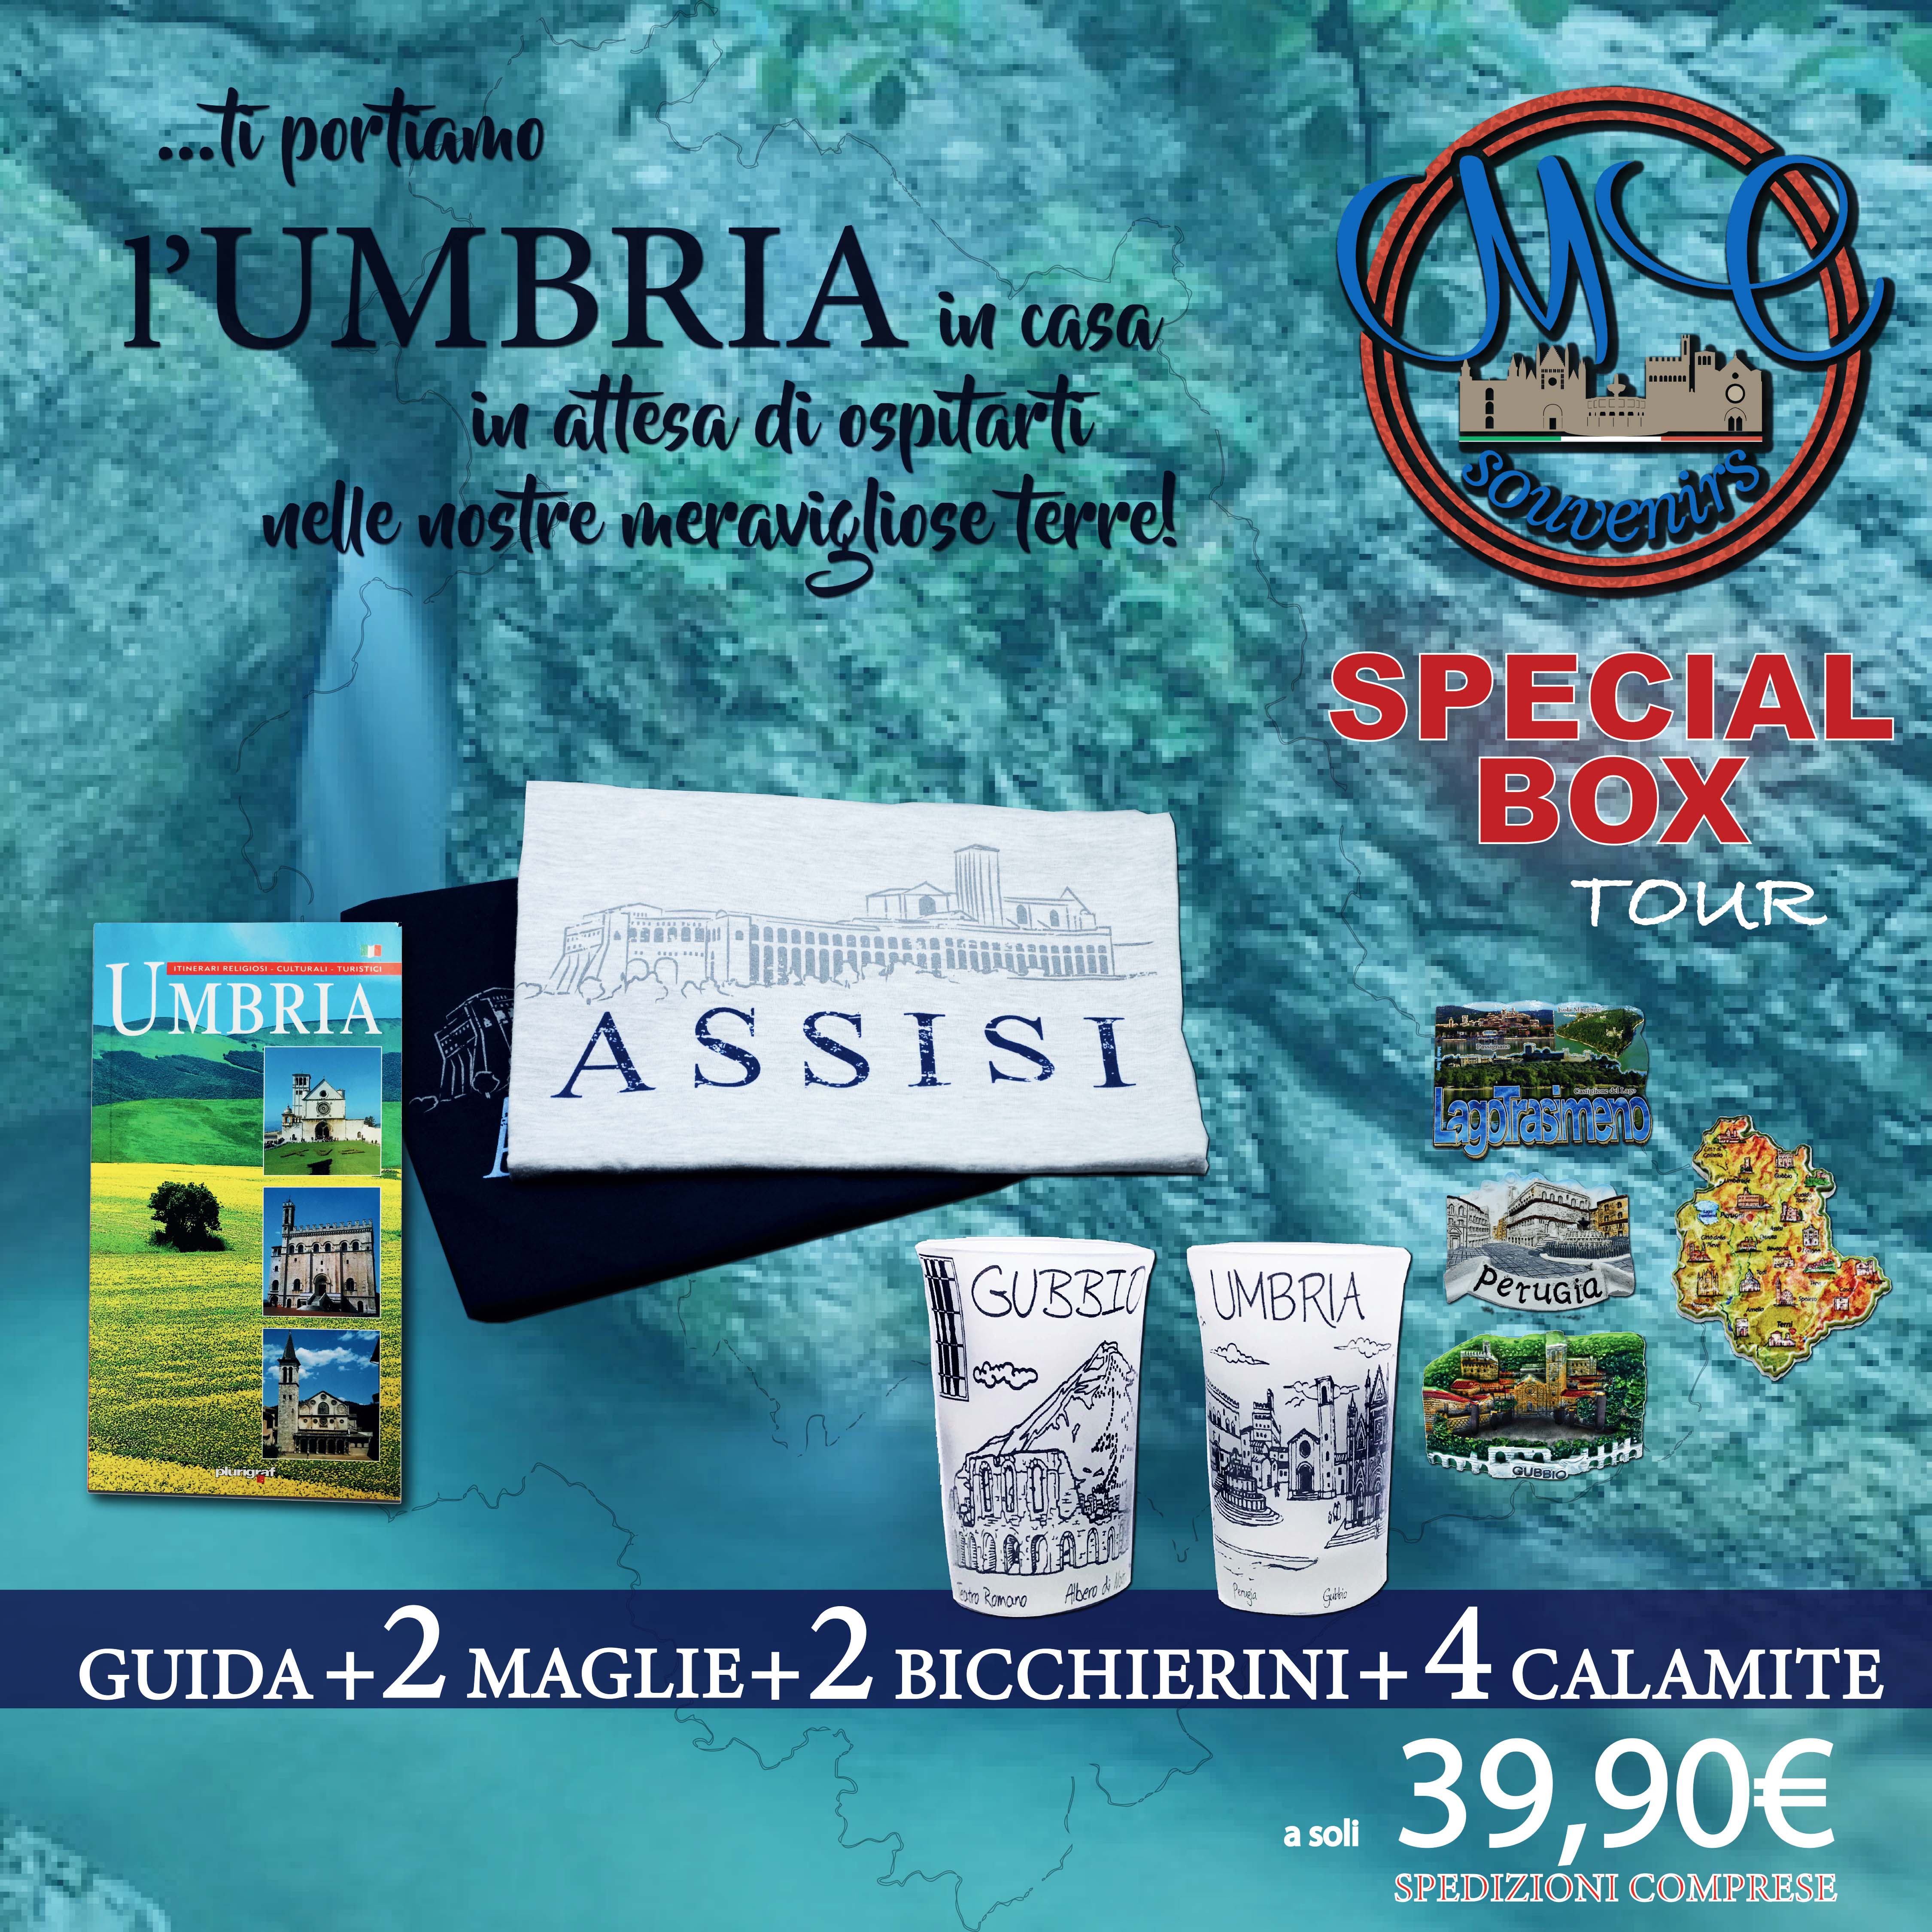 Umbria Special Box TOUR